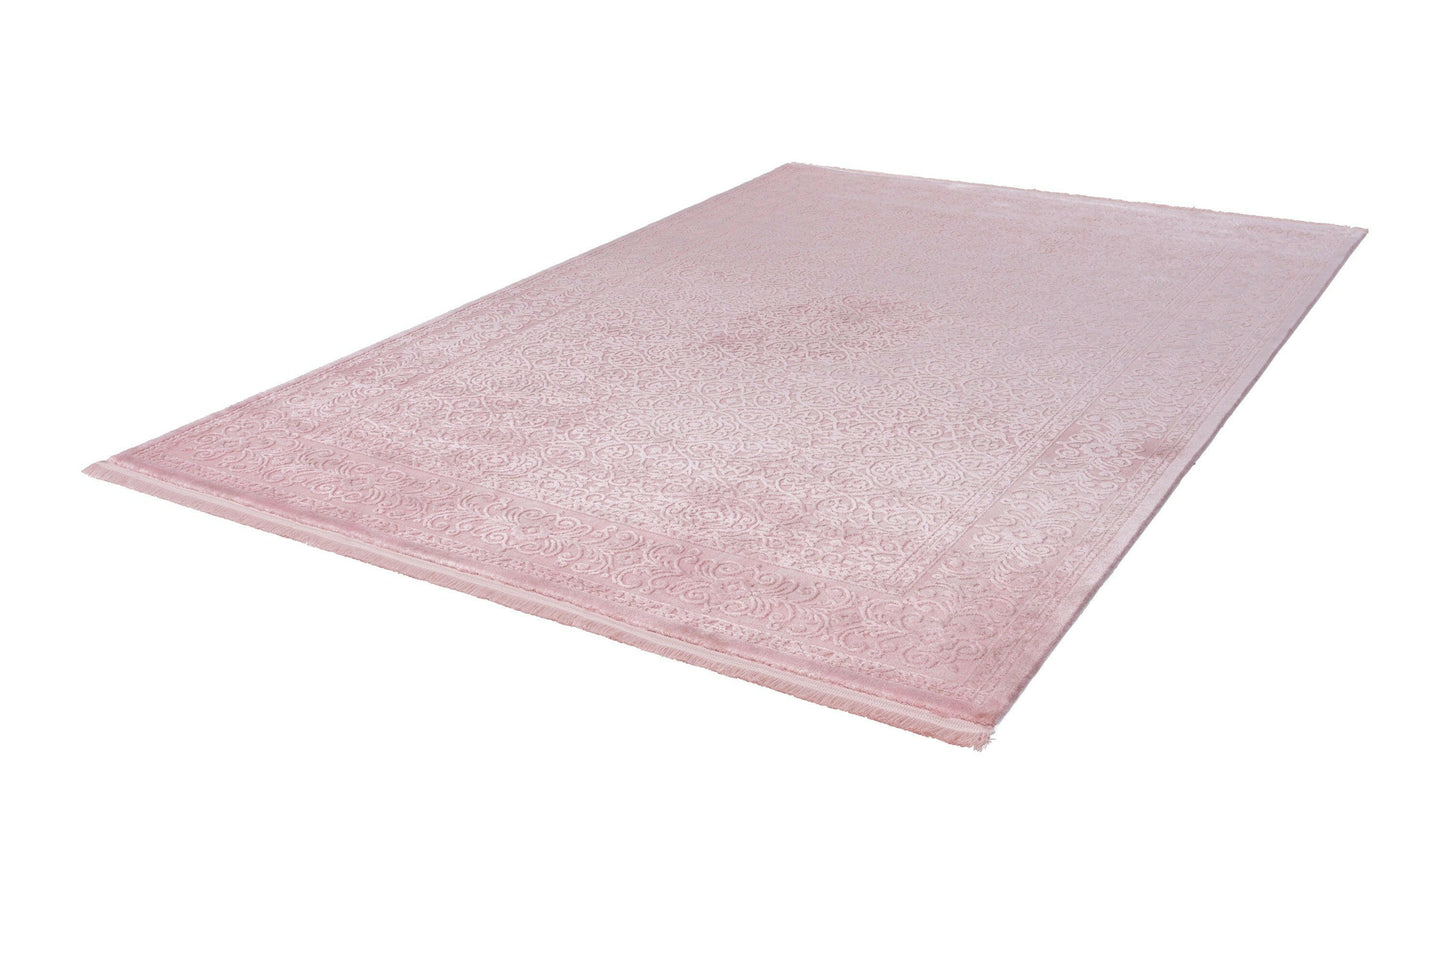 Pierre Cardin - Vendome 701 Pink